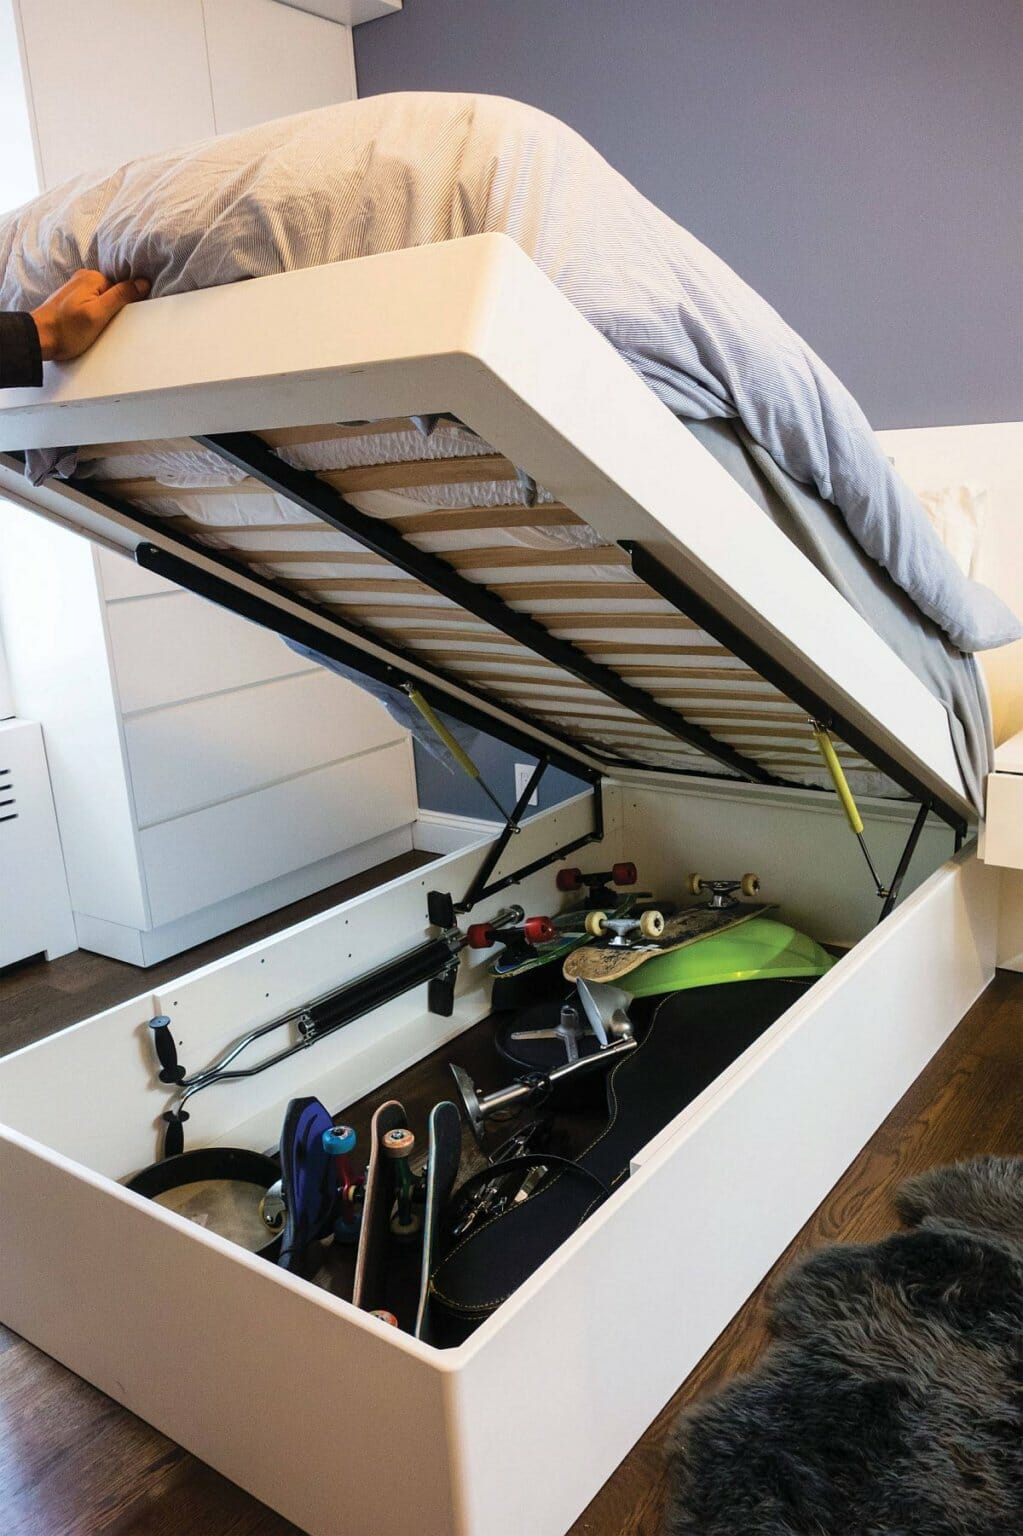 Mẫu giường ngủ với khung tùy chỉnh cho phép bạn lưu trữ những món đồ ít khi sử dụng, giúp căn phòng trở nên thoáng gọn hơn.